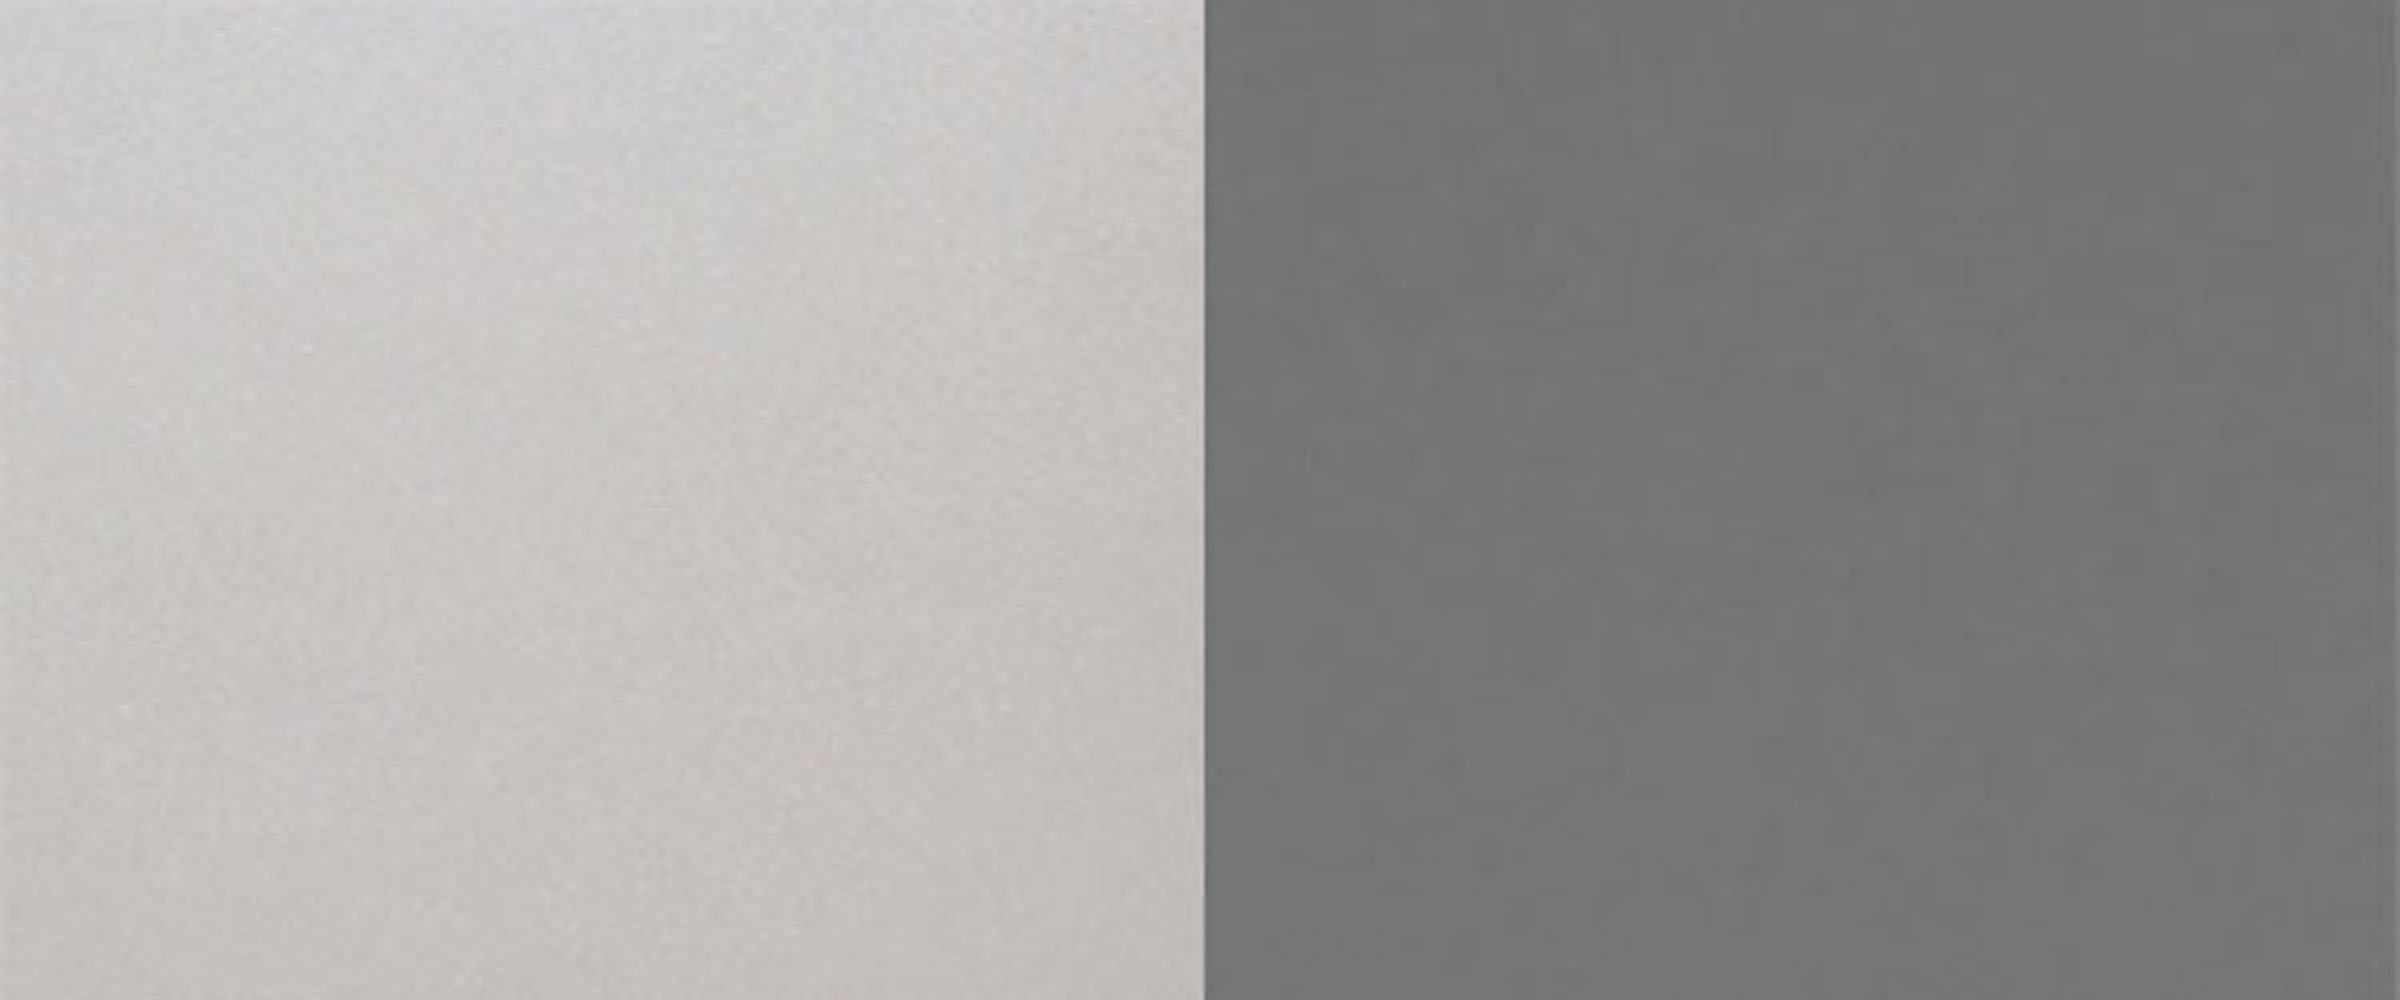 Feldmann-Wohnen Klapphängeschrank Bonn matt dust wählbar grey Klappe grau / Farbe mit 90cm Küchenschrank BO-W4B/90-AV